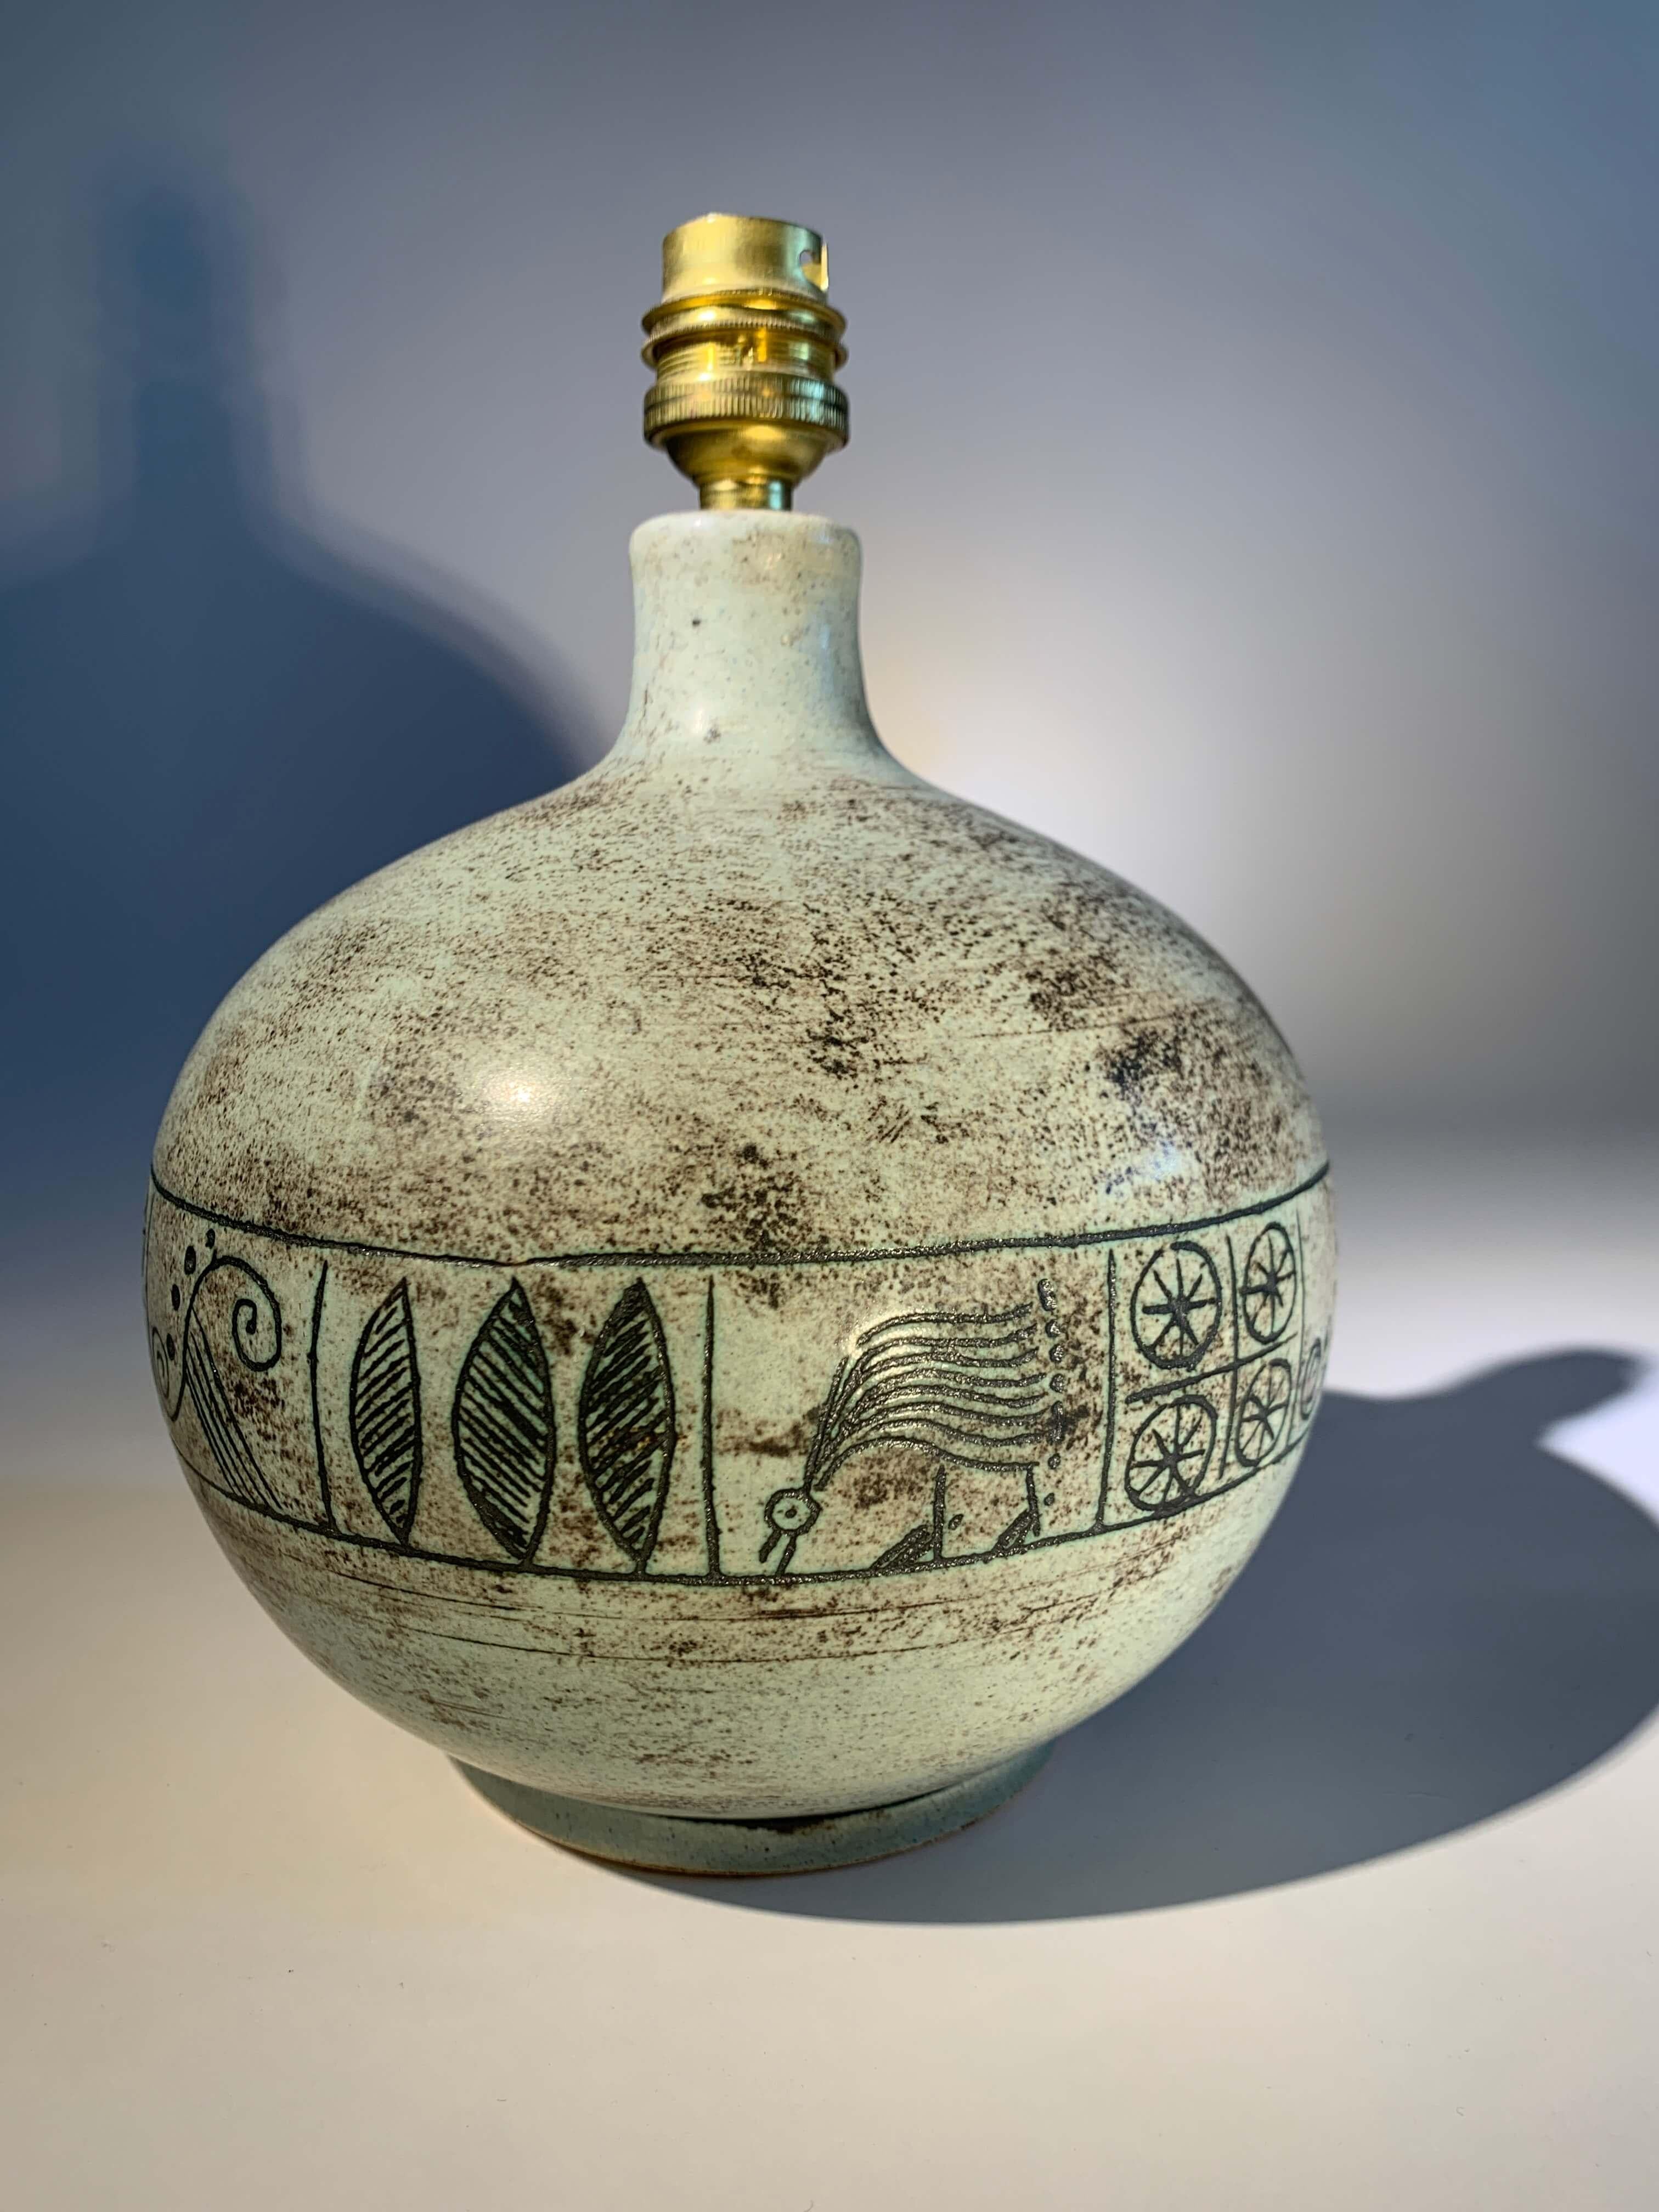 Lampe de table signée.
artiste : Jacques Blin (1920-1995)

Forme cylindrique en céramique émaillée vert d'eau avec décor incisé.

France, vers 1950